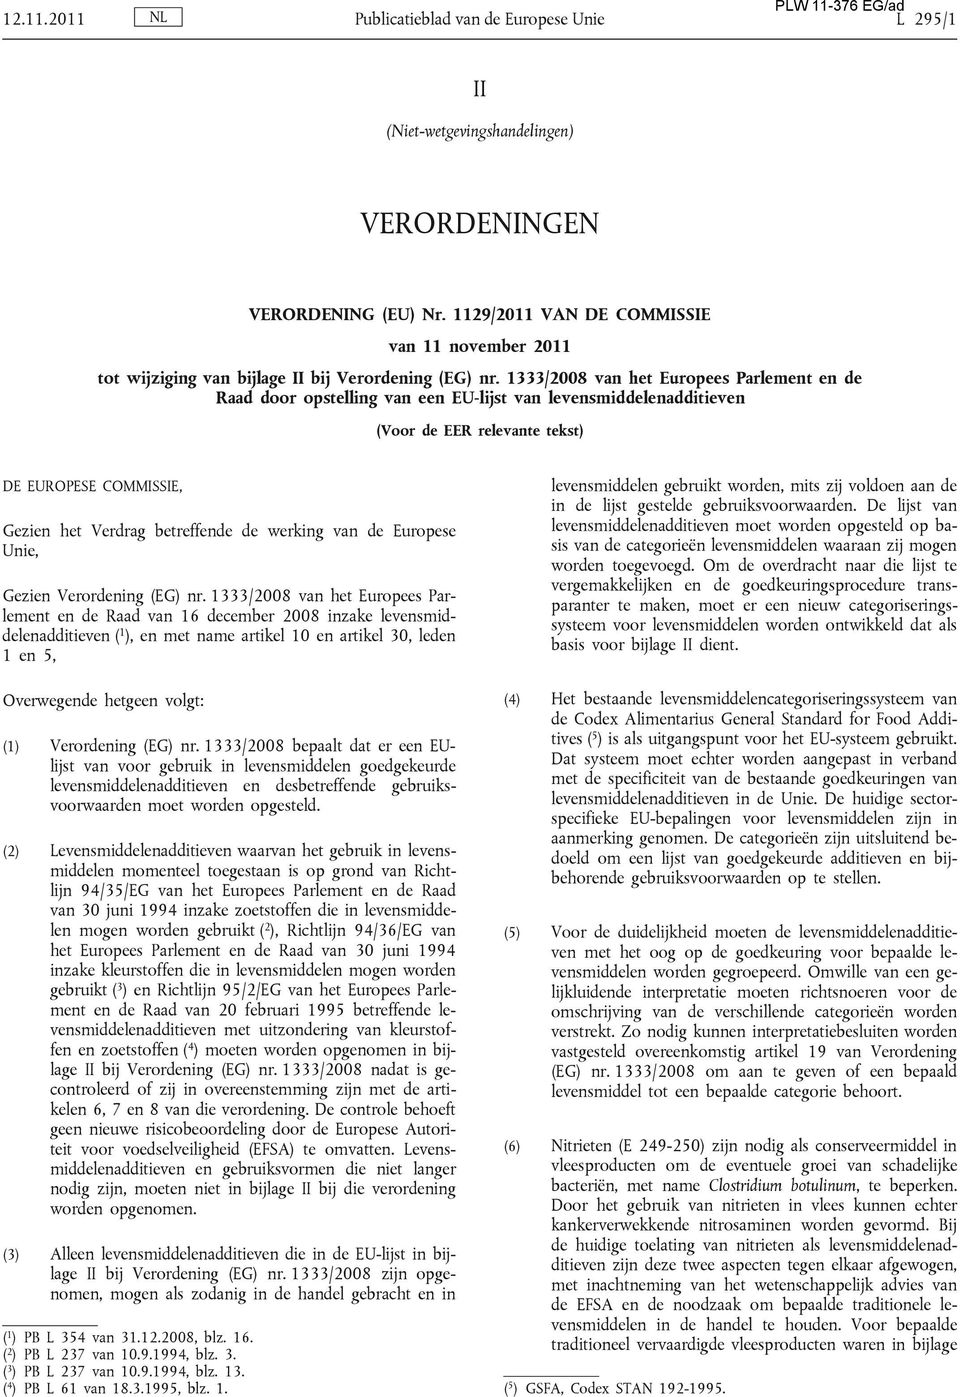 1333/2008 van het Europees Parlement en de Raad door opstelling van een EU-lijst van levensmiddelenadditieven (Voor de EER relevante tekst) DE EUROPESE COMMISSIE, Gezien het Verdrag betreffende de